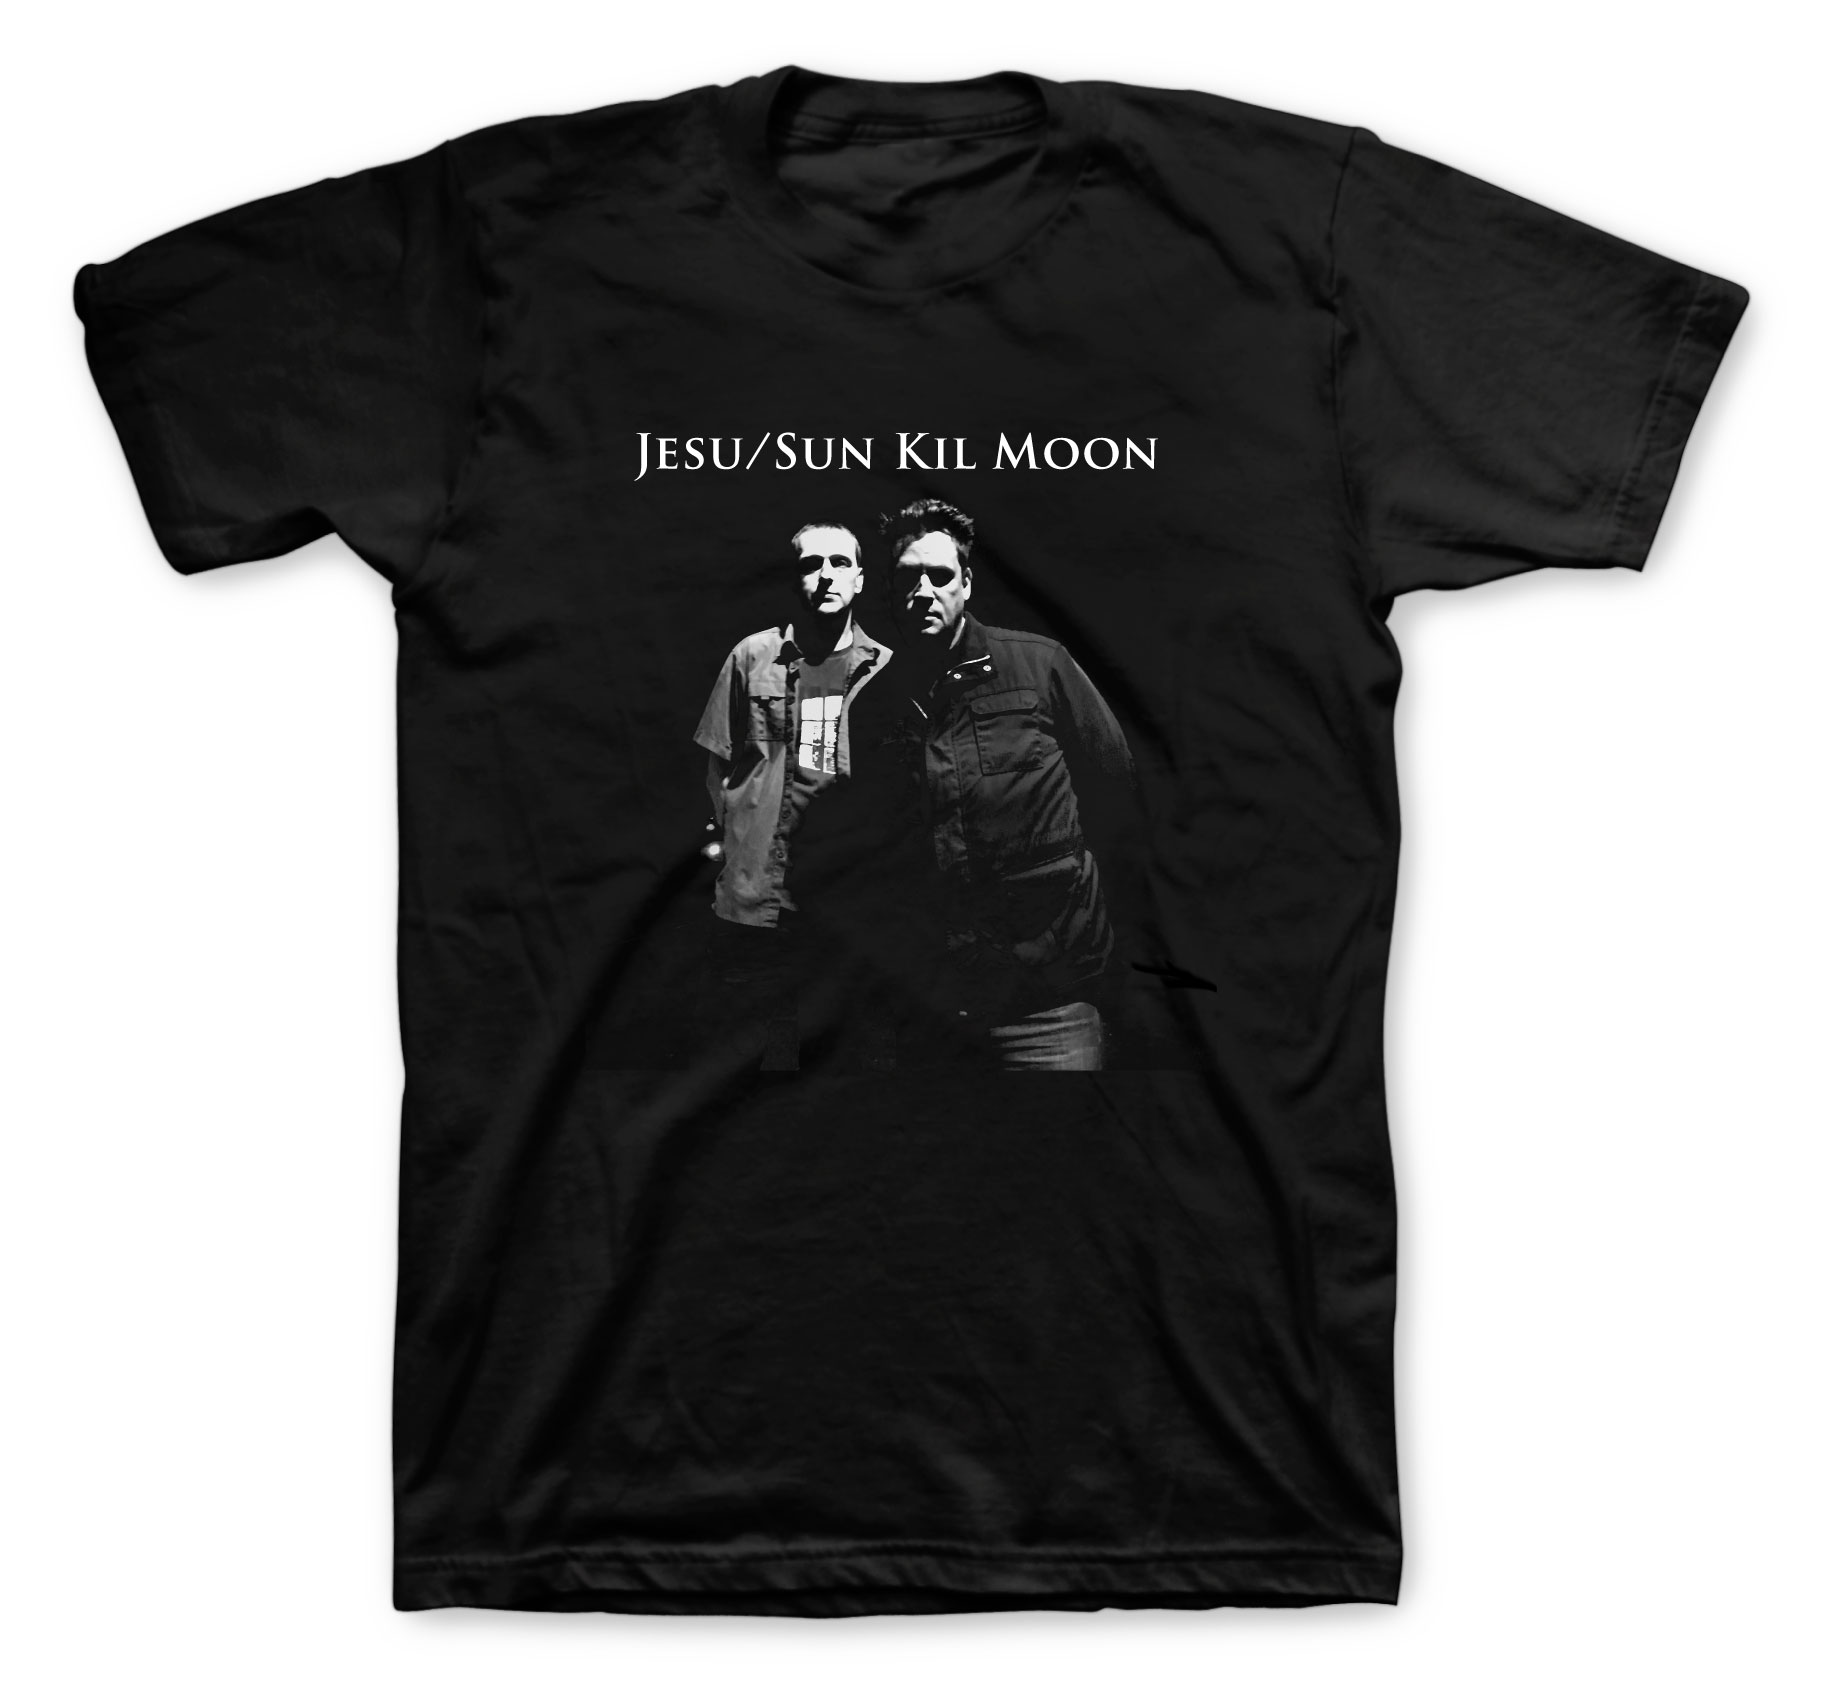 Jesu/Sun Kil Moon T-shirts